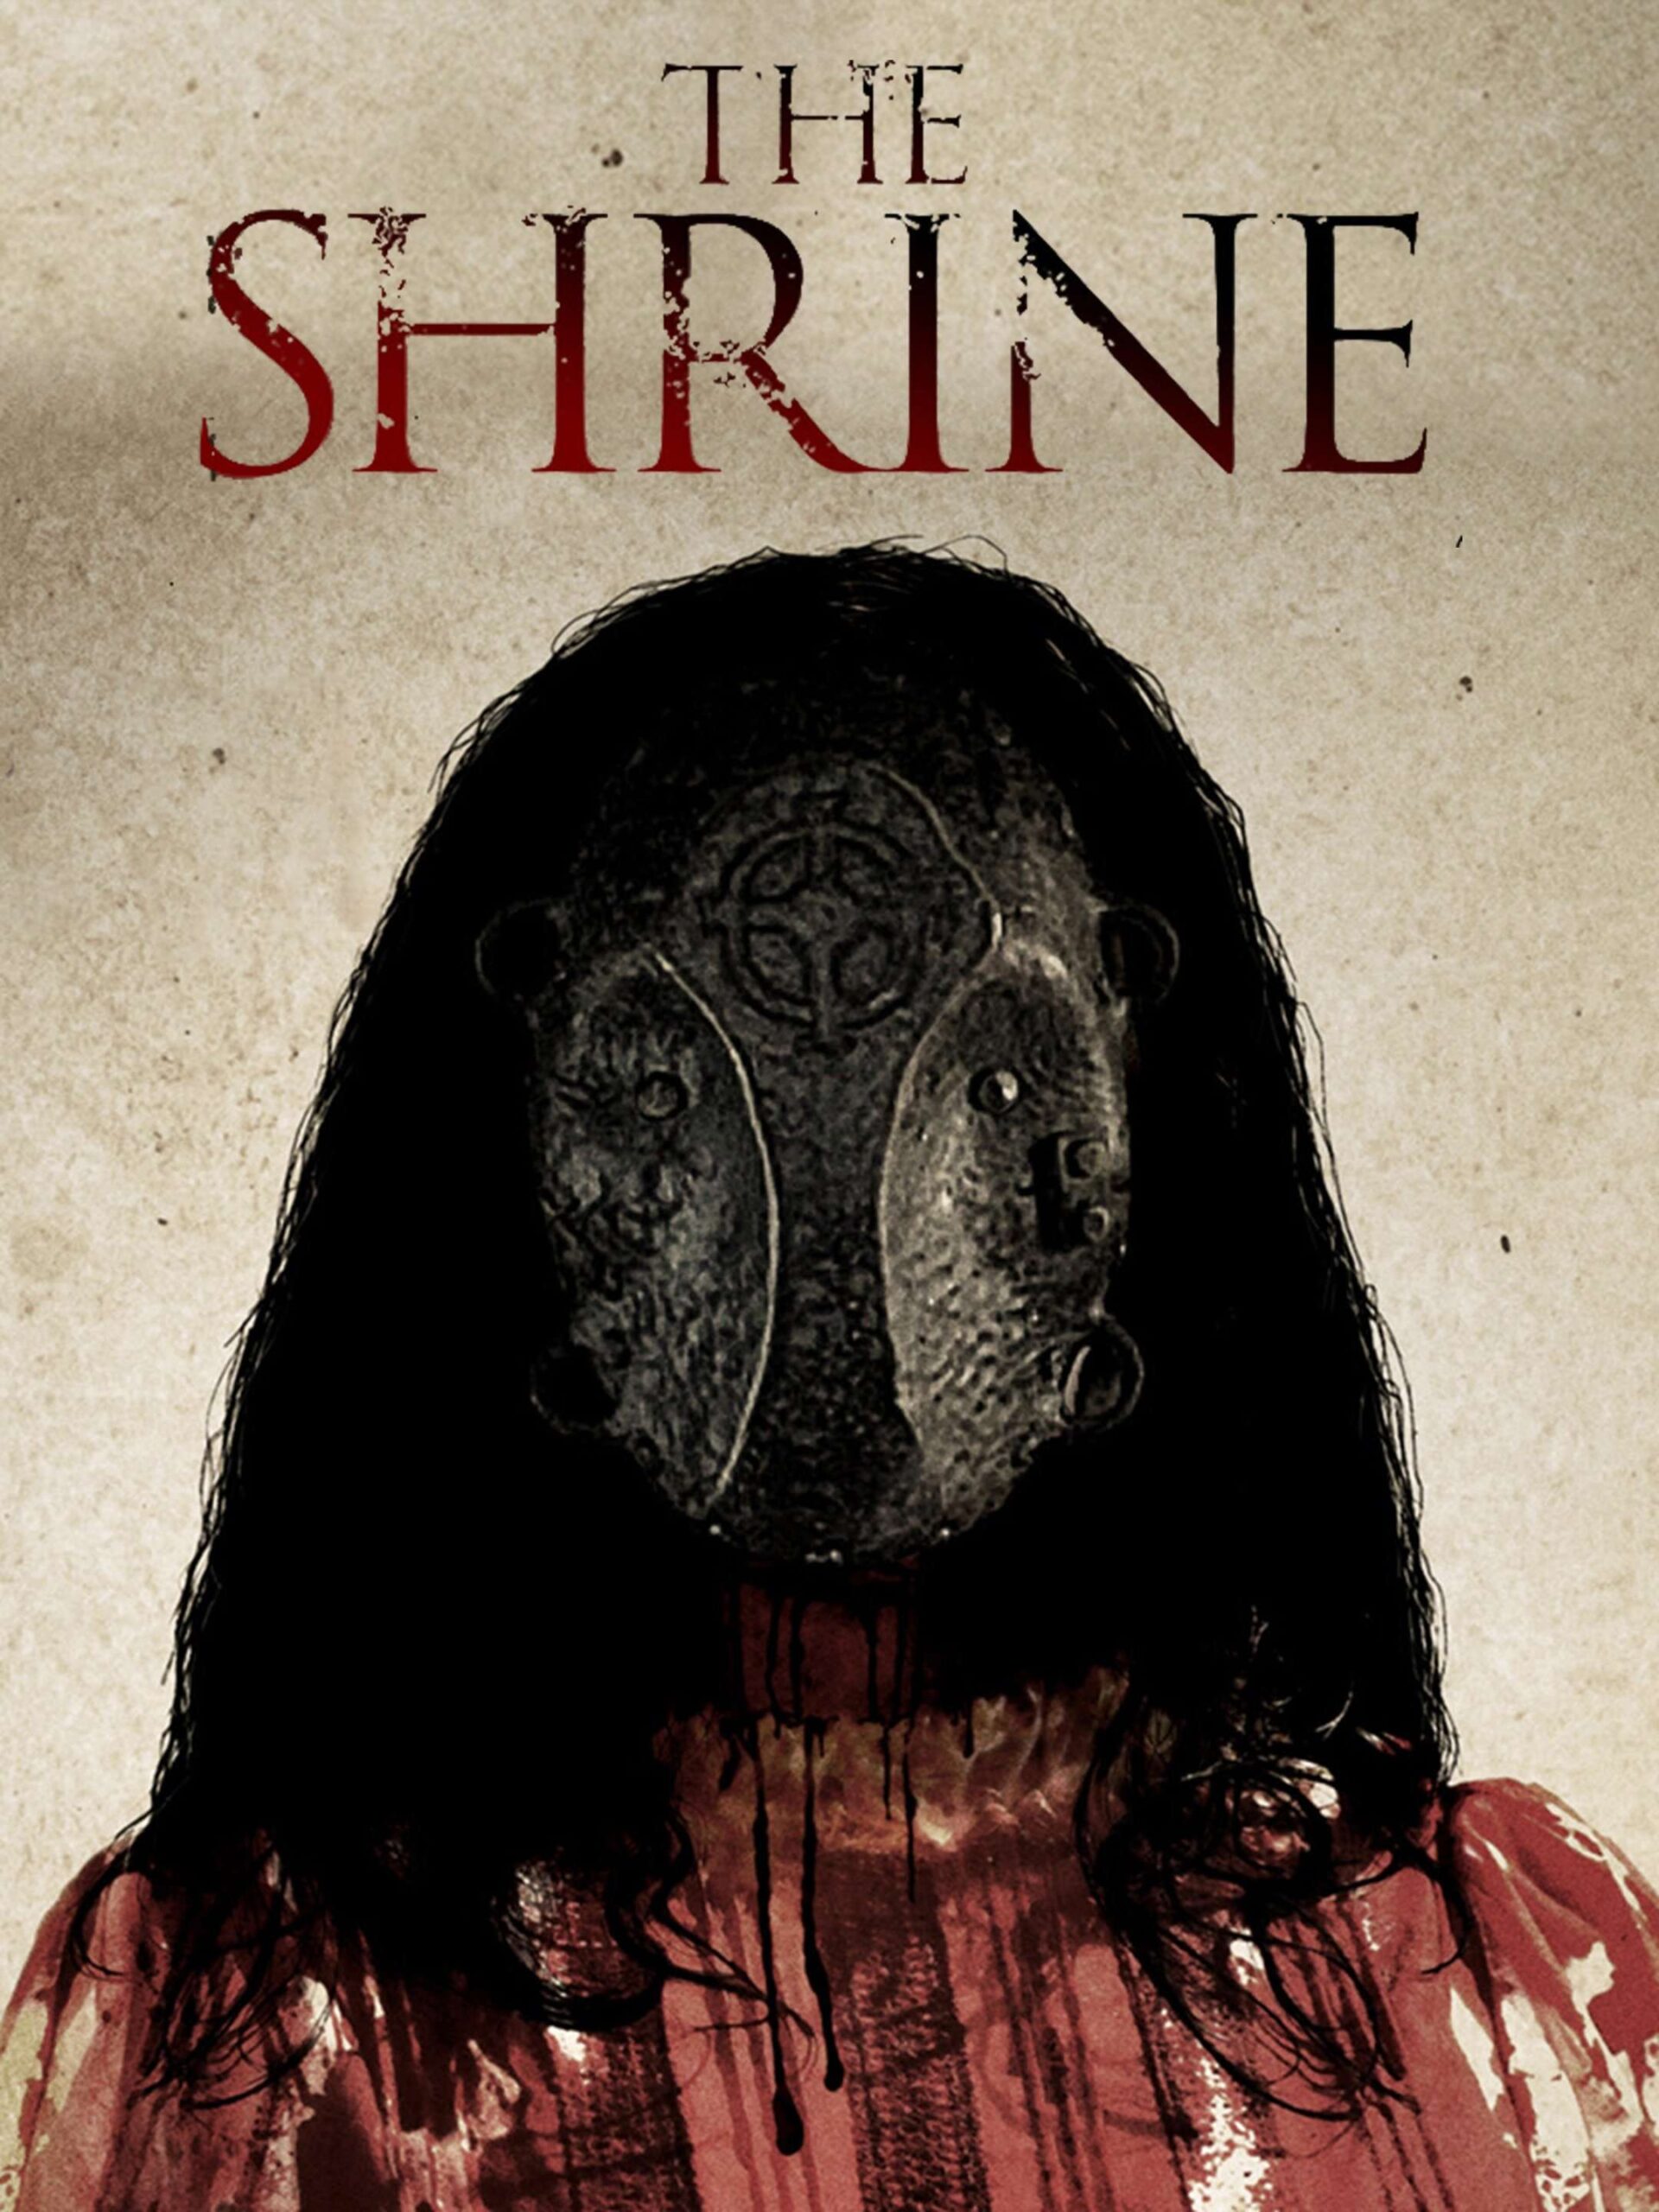 The Shrine (2010)